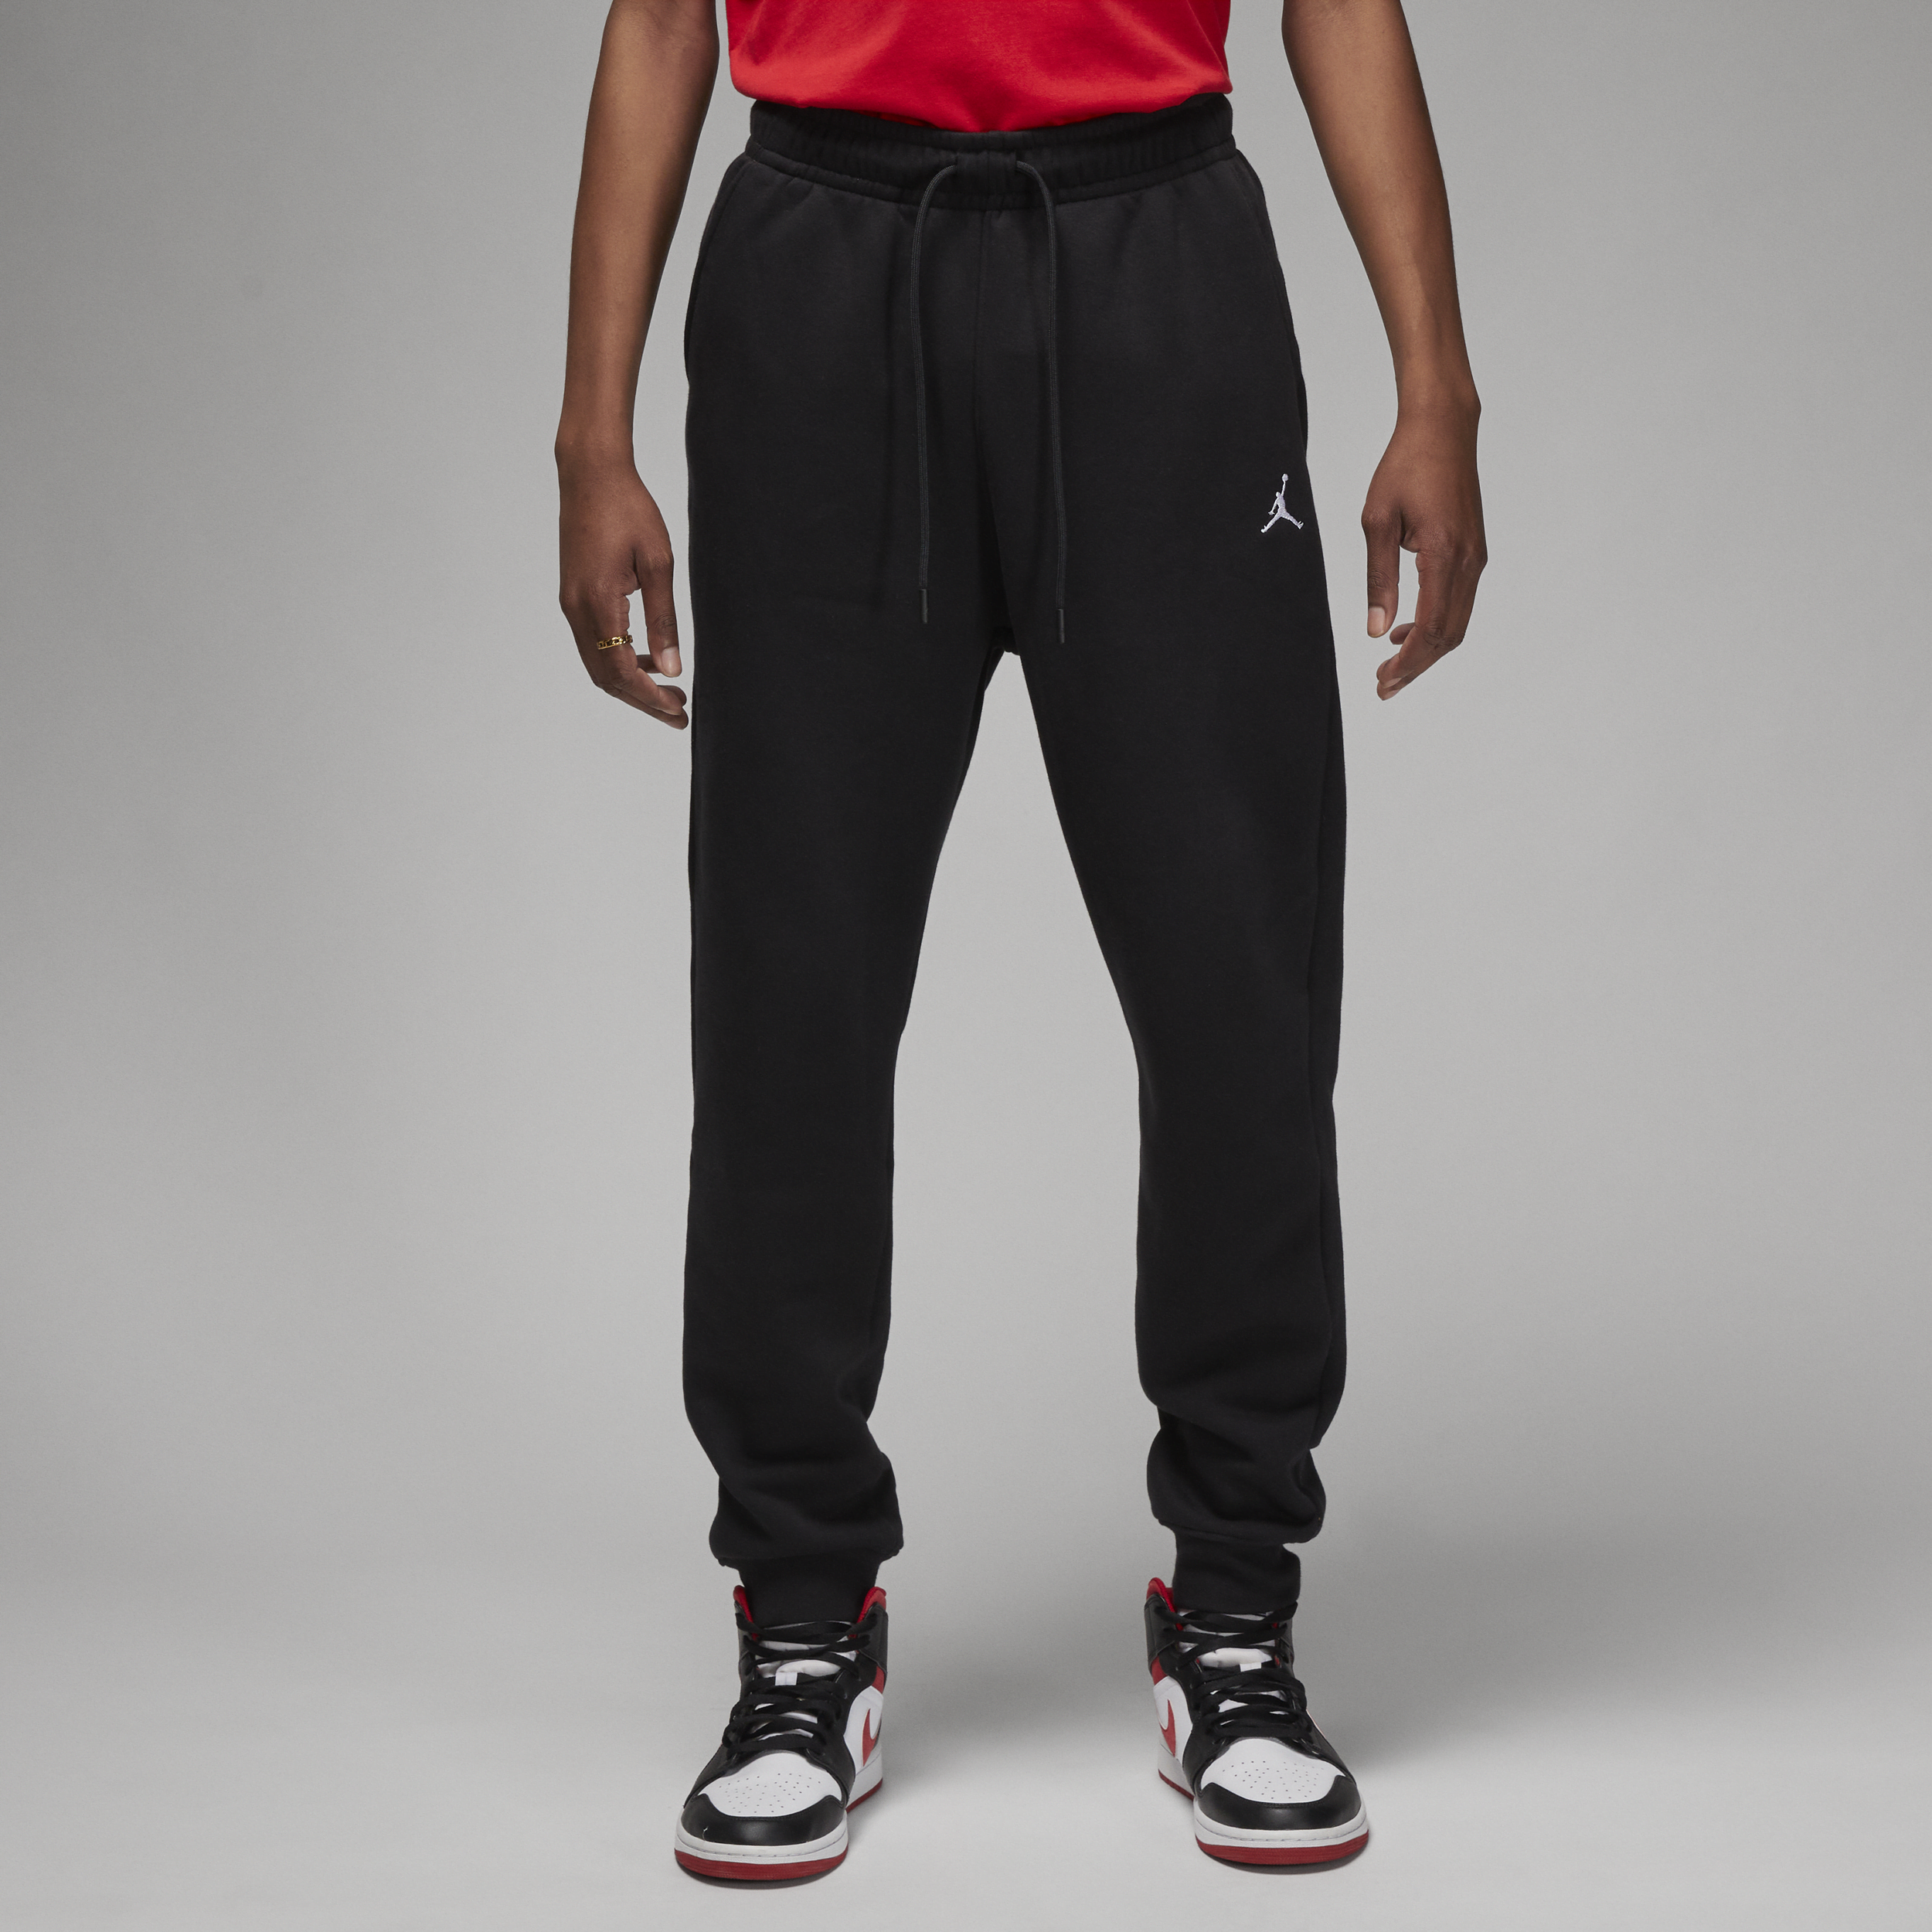 Nike Calça Jordan Essentials Masculina